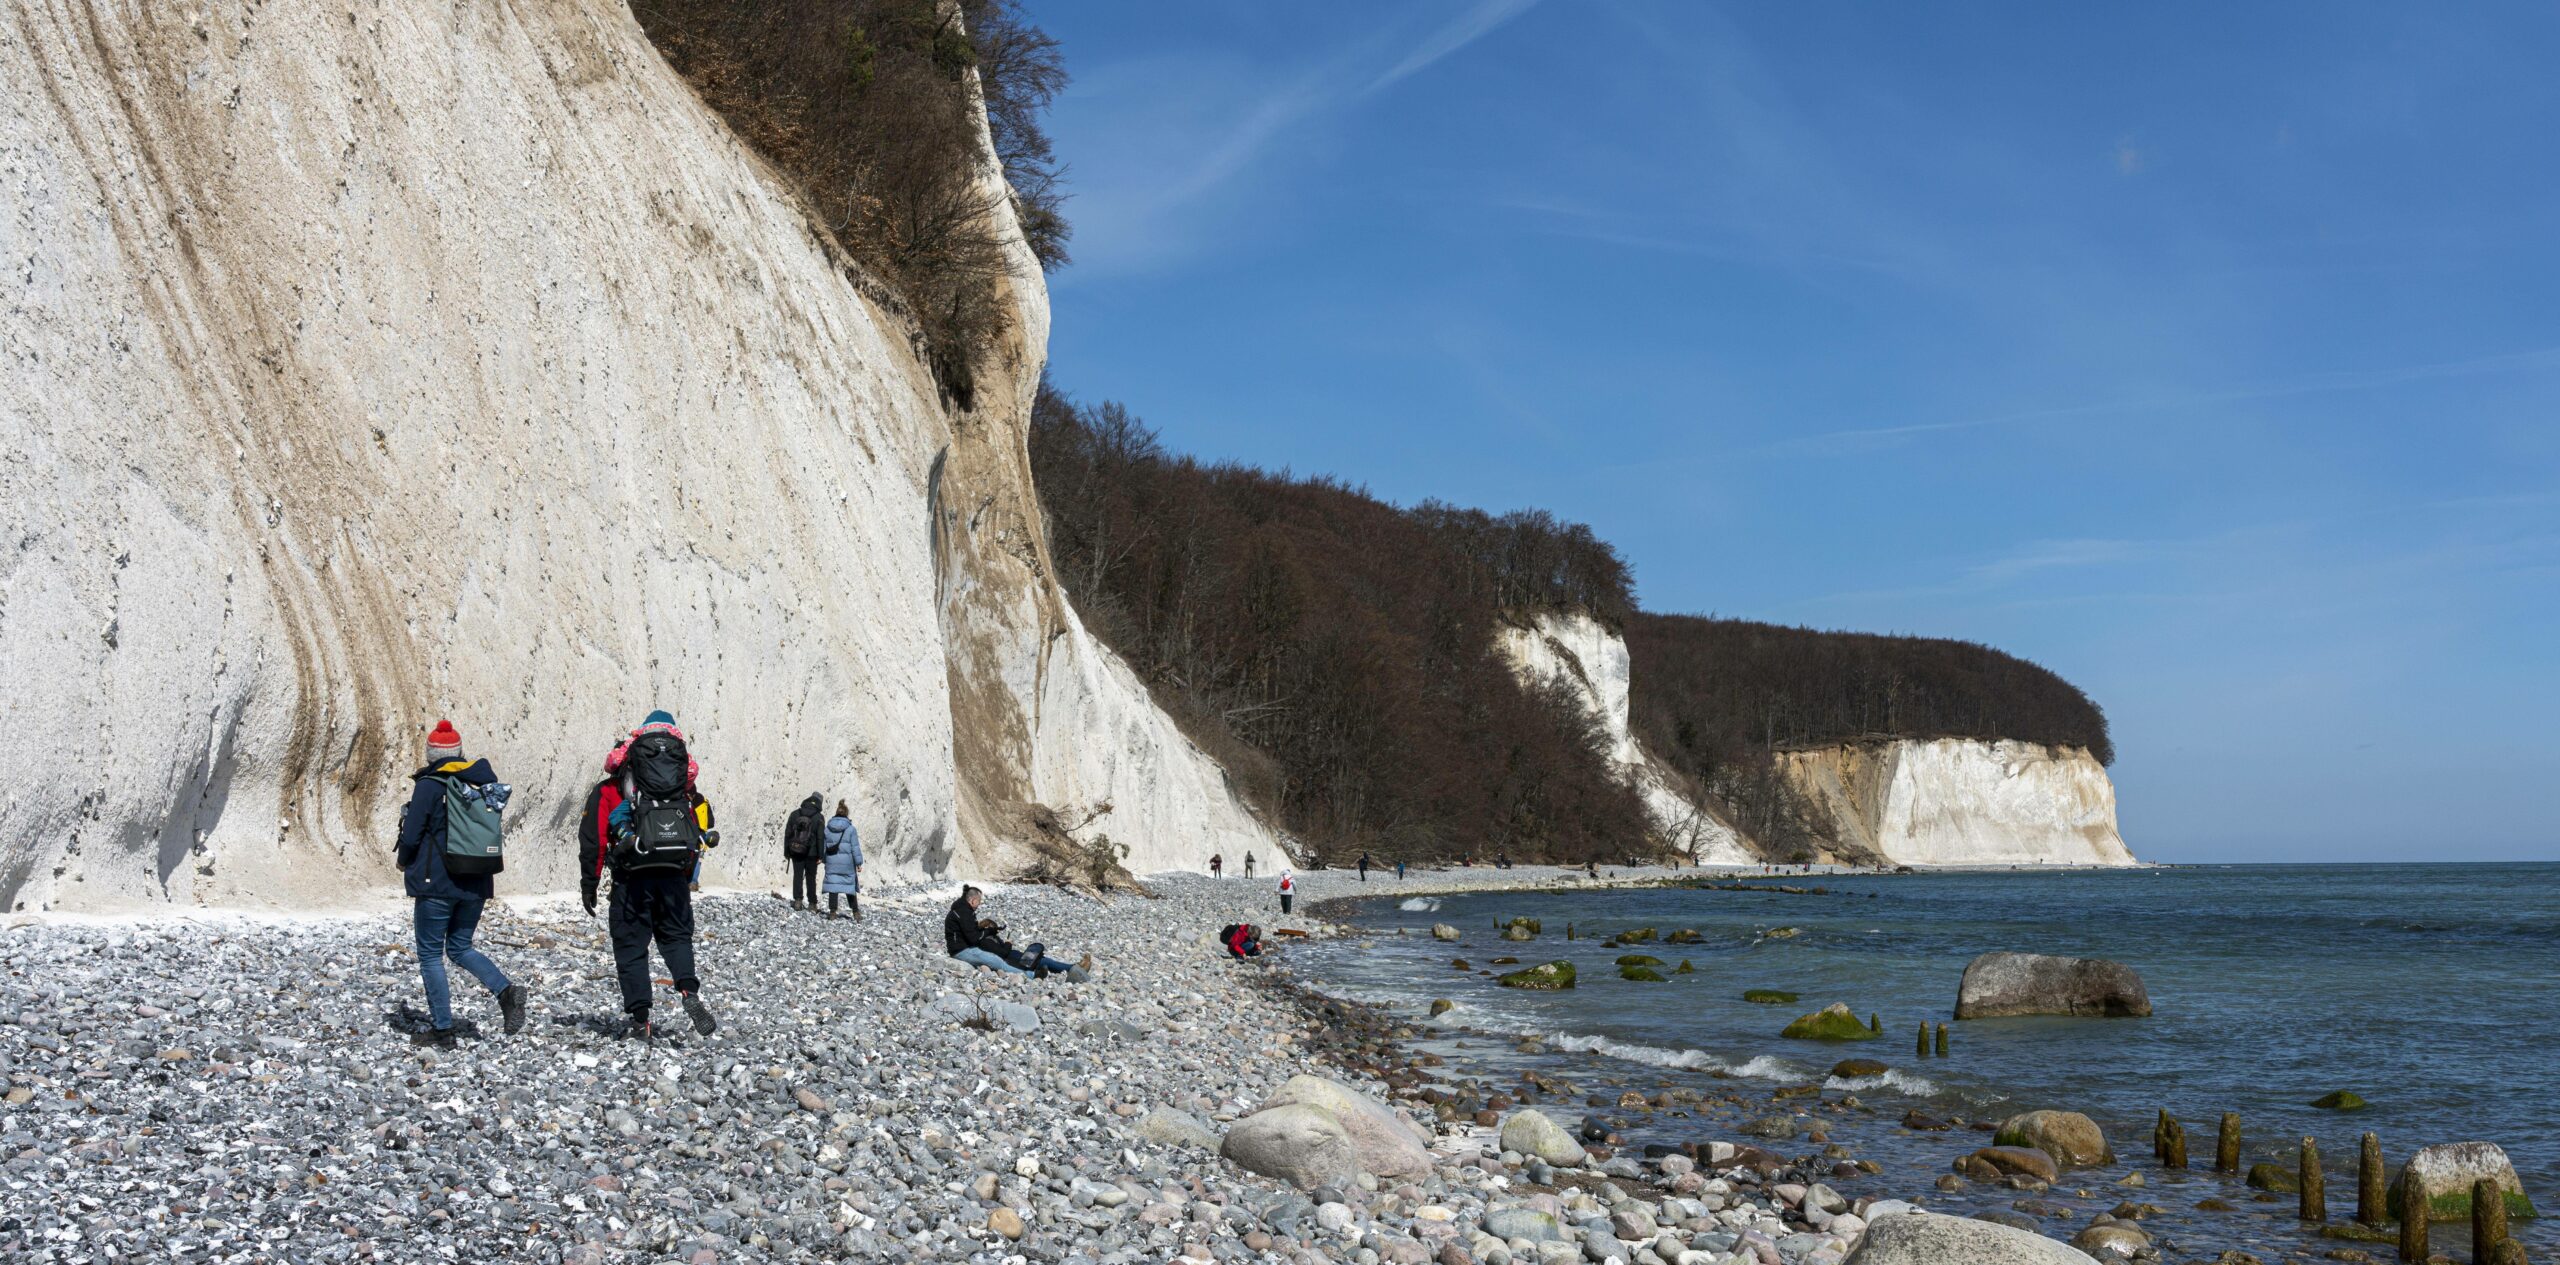 Beim Herumklettern im Steilhang im Nationalpark Jasmund auf Rügen rutschte ein 26-Jähriger ab und stürzte. Schwer verletzt wurde er mit einem Rettungshubschrauber in eine Klinik gebracht.